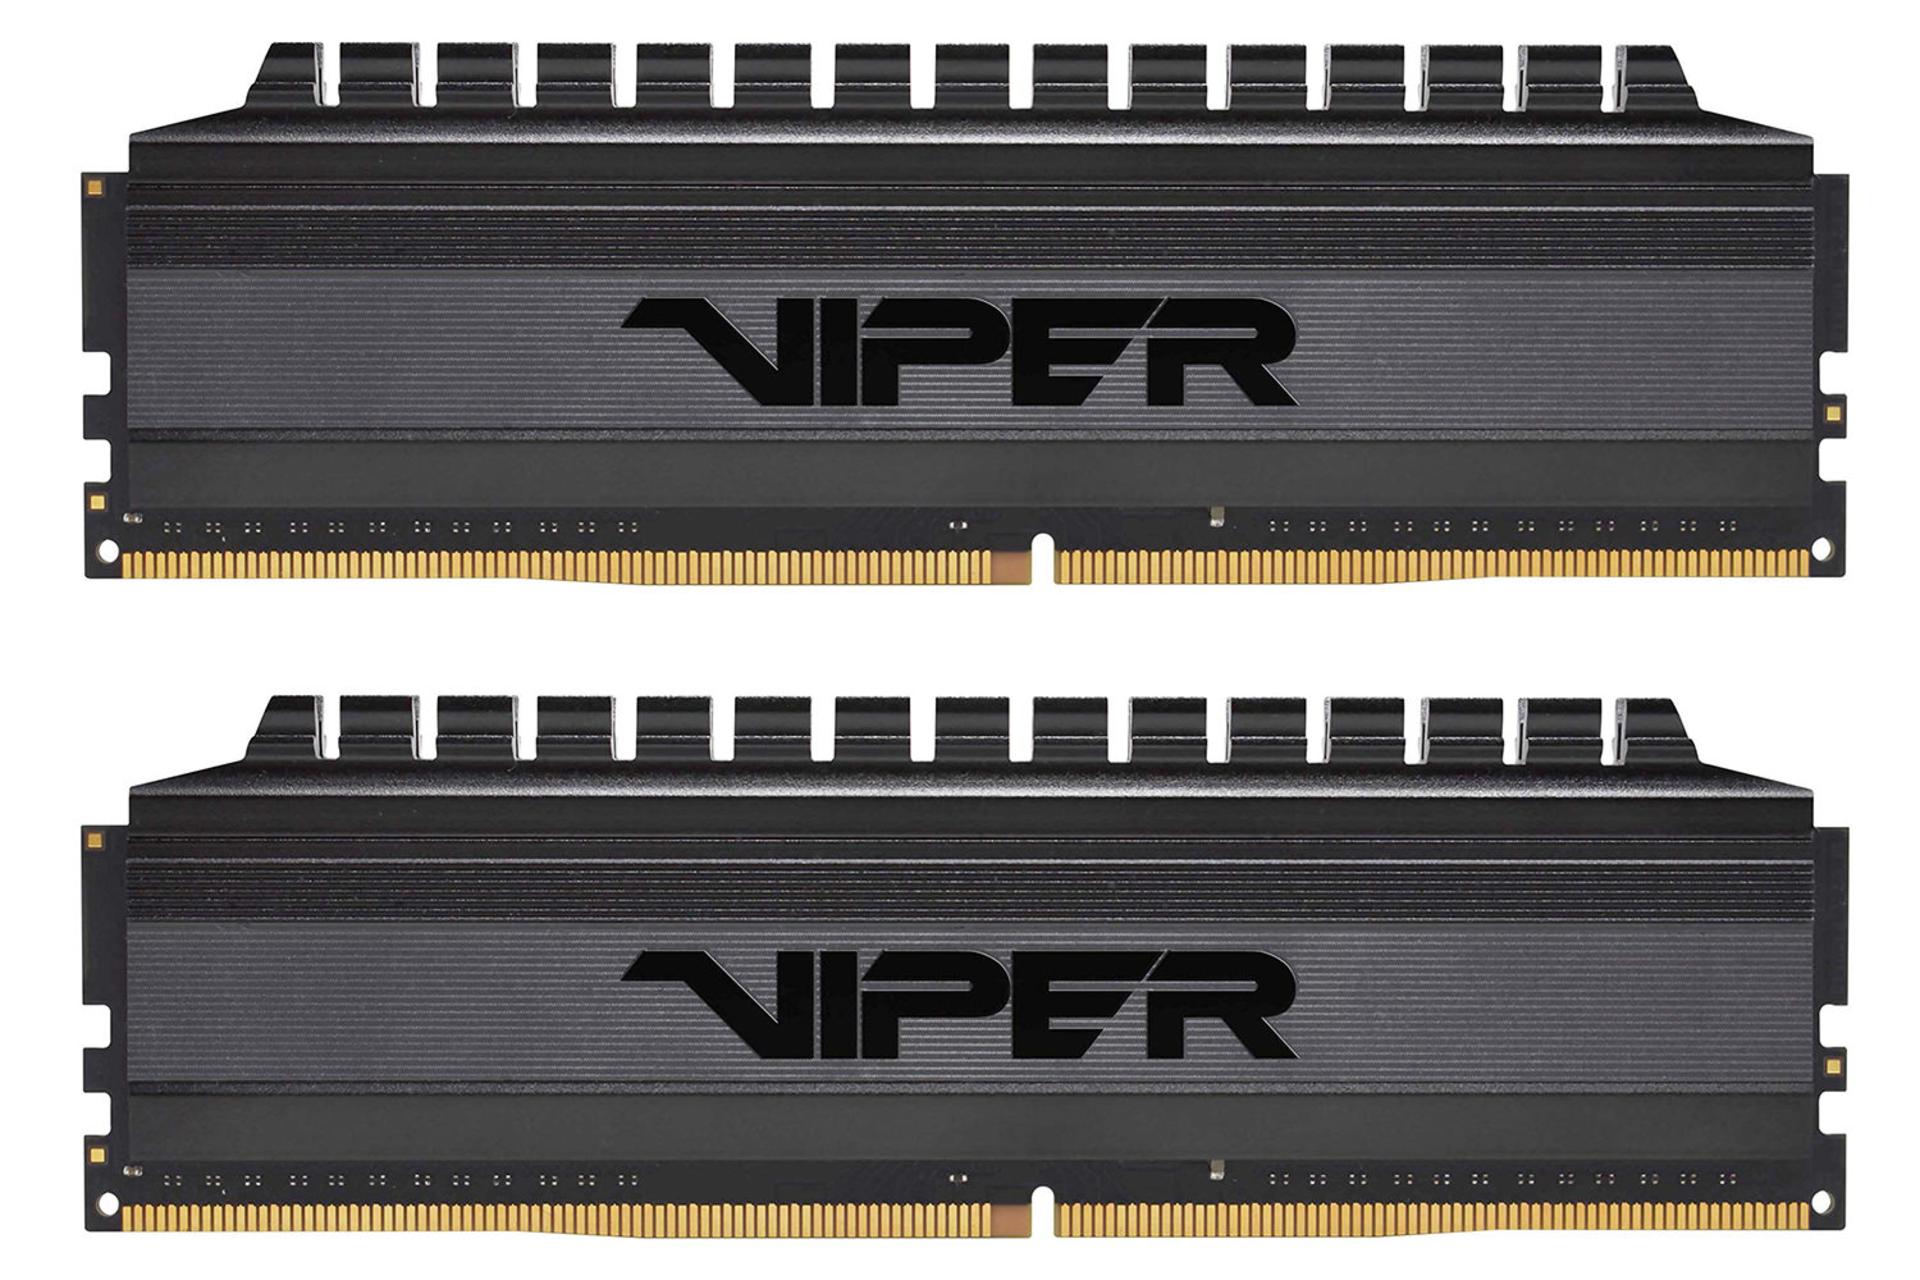 رم پاتریوت Viper 4 Blackout ظرفیت 16 گیگابایت (2x8) از نوع DDR4-4400